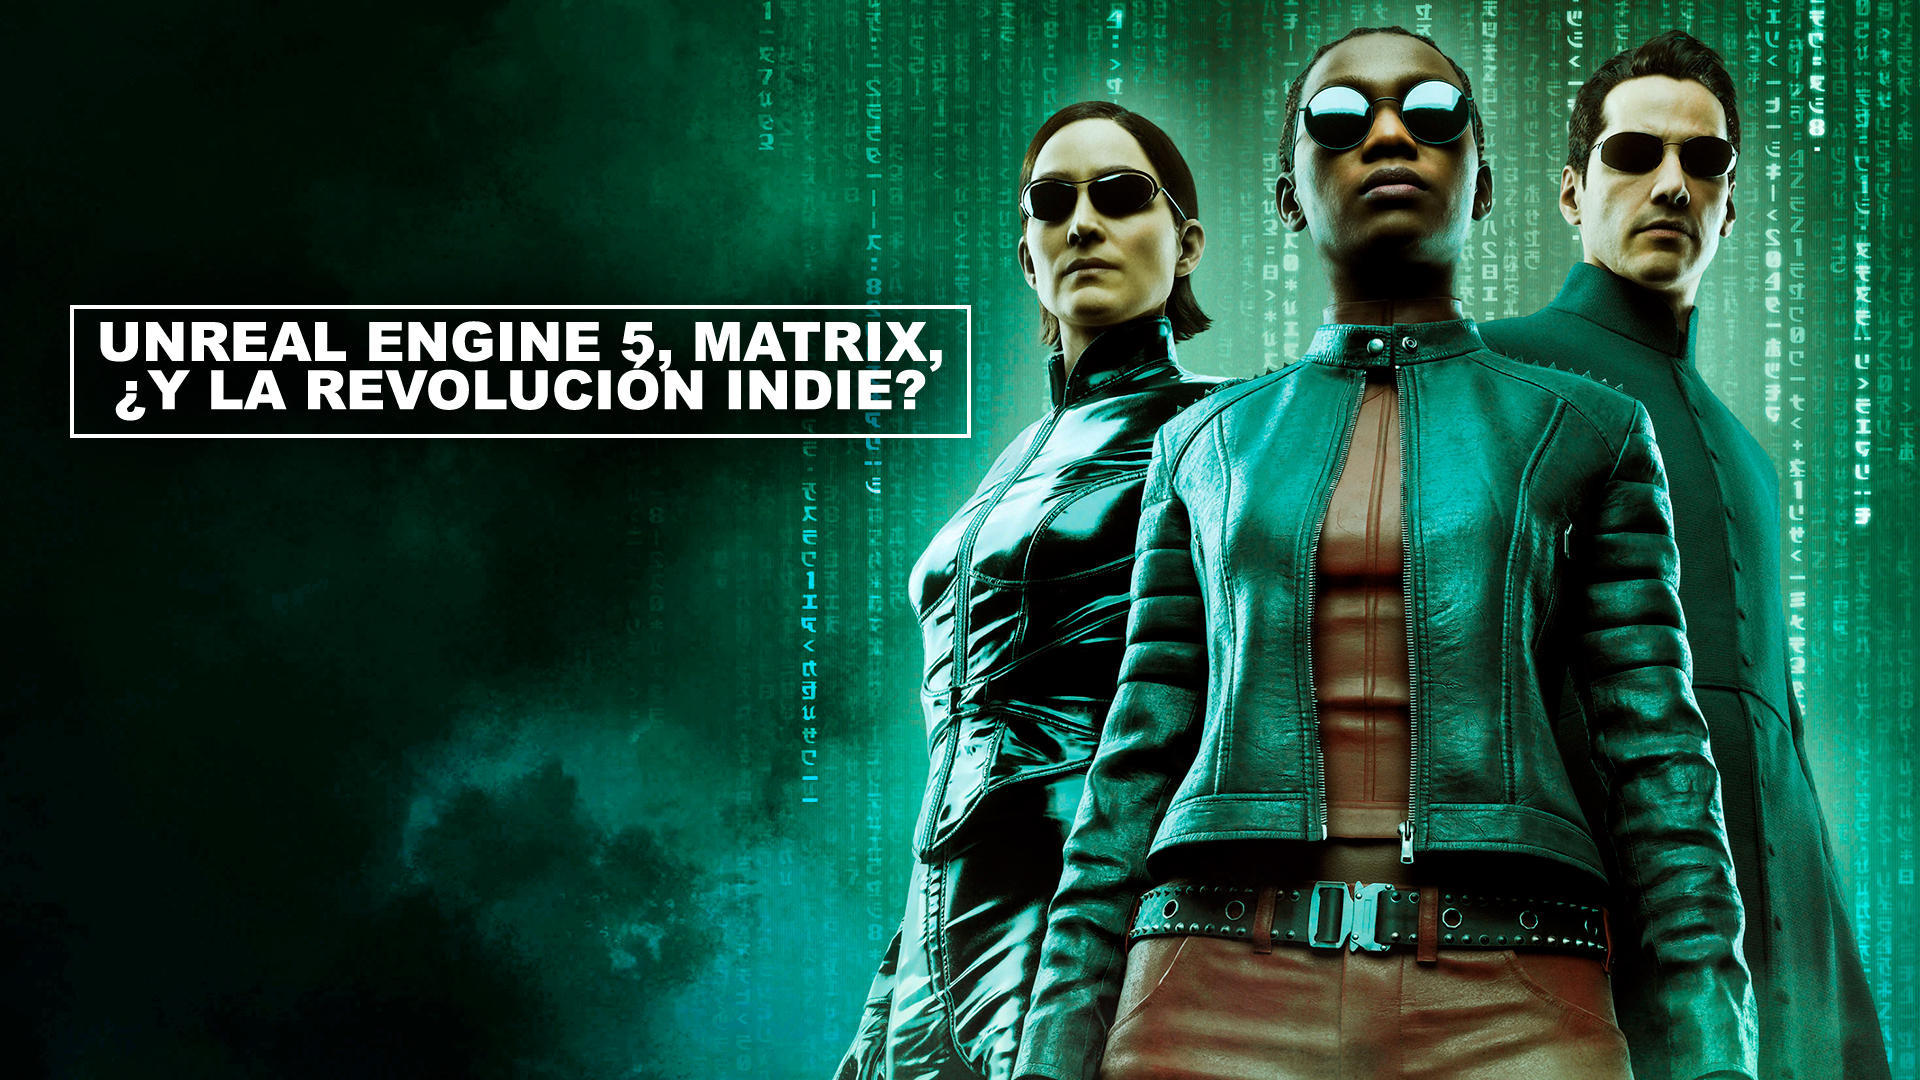 Unreal Engine 5, Matrix, y la revolucin indie?